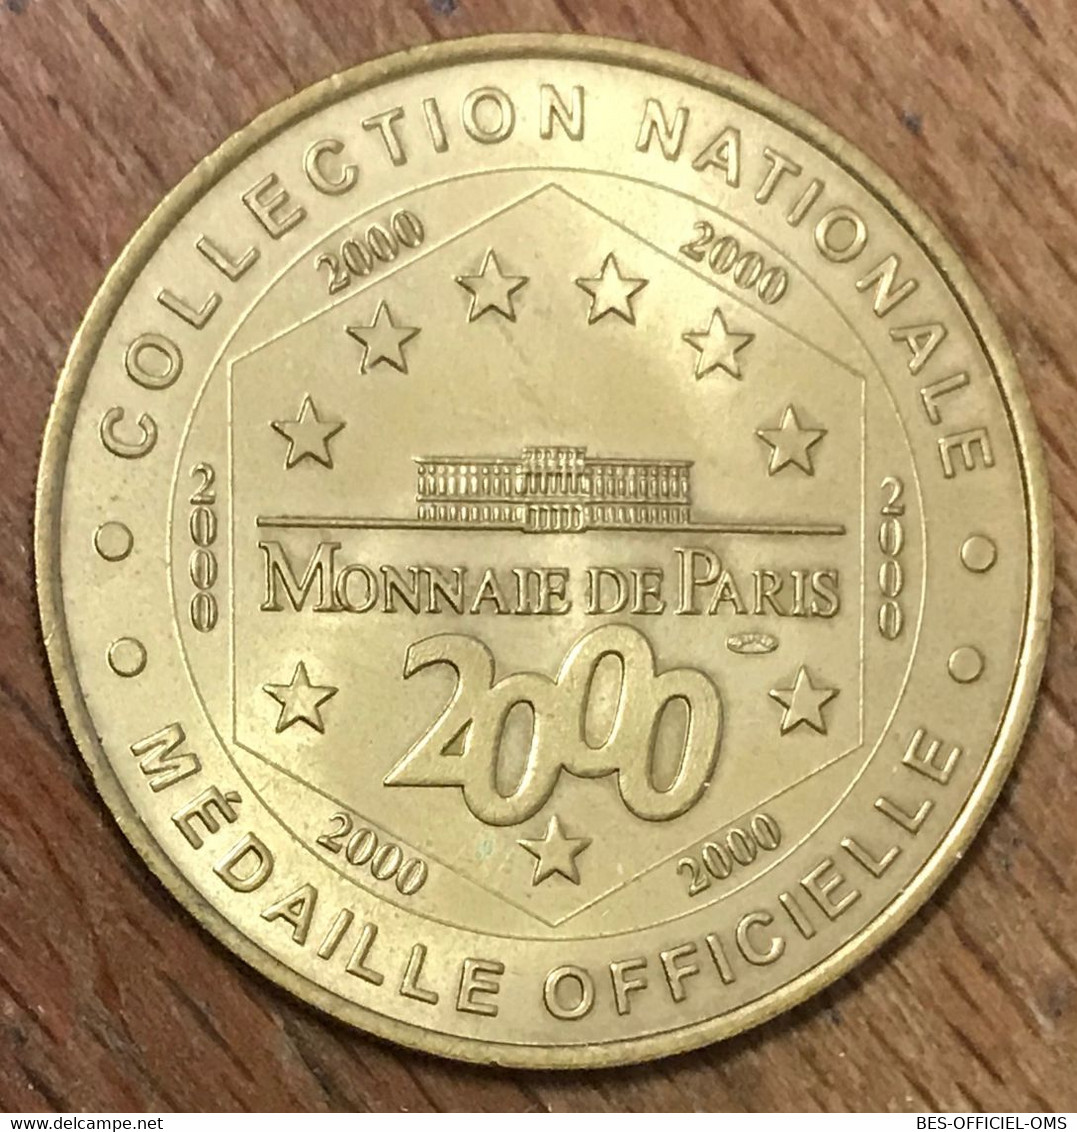 75007 PARIS DÔME INVALIDES TOMBEAU DE NAPOLÉON MDP 2000 MÉDAILLE MONNAIE DE PARIS JETON TOURISTIQUE MEDALS COIN TOKENS - 2000